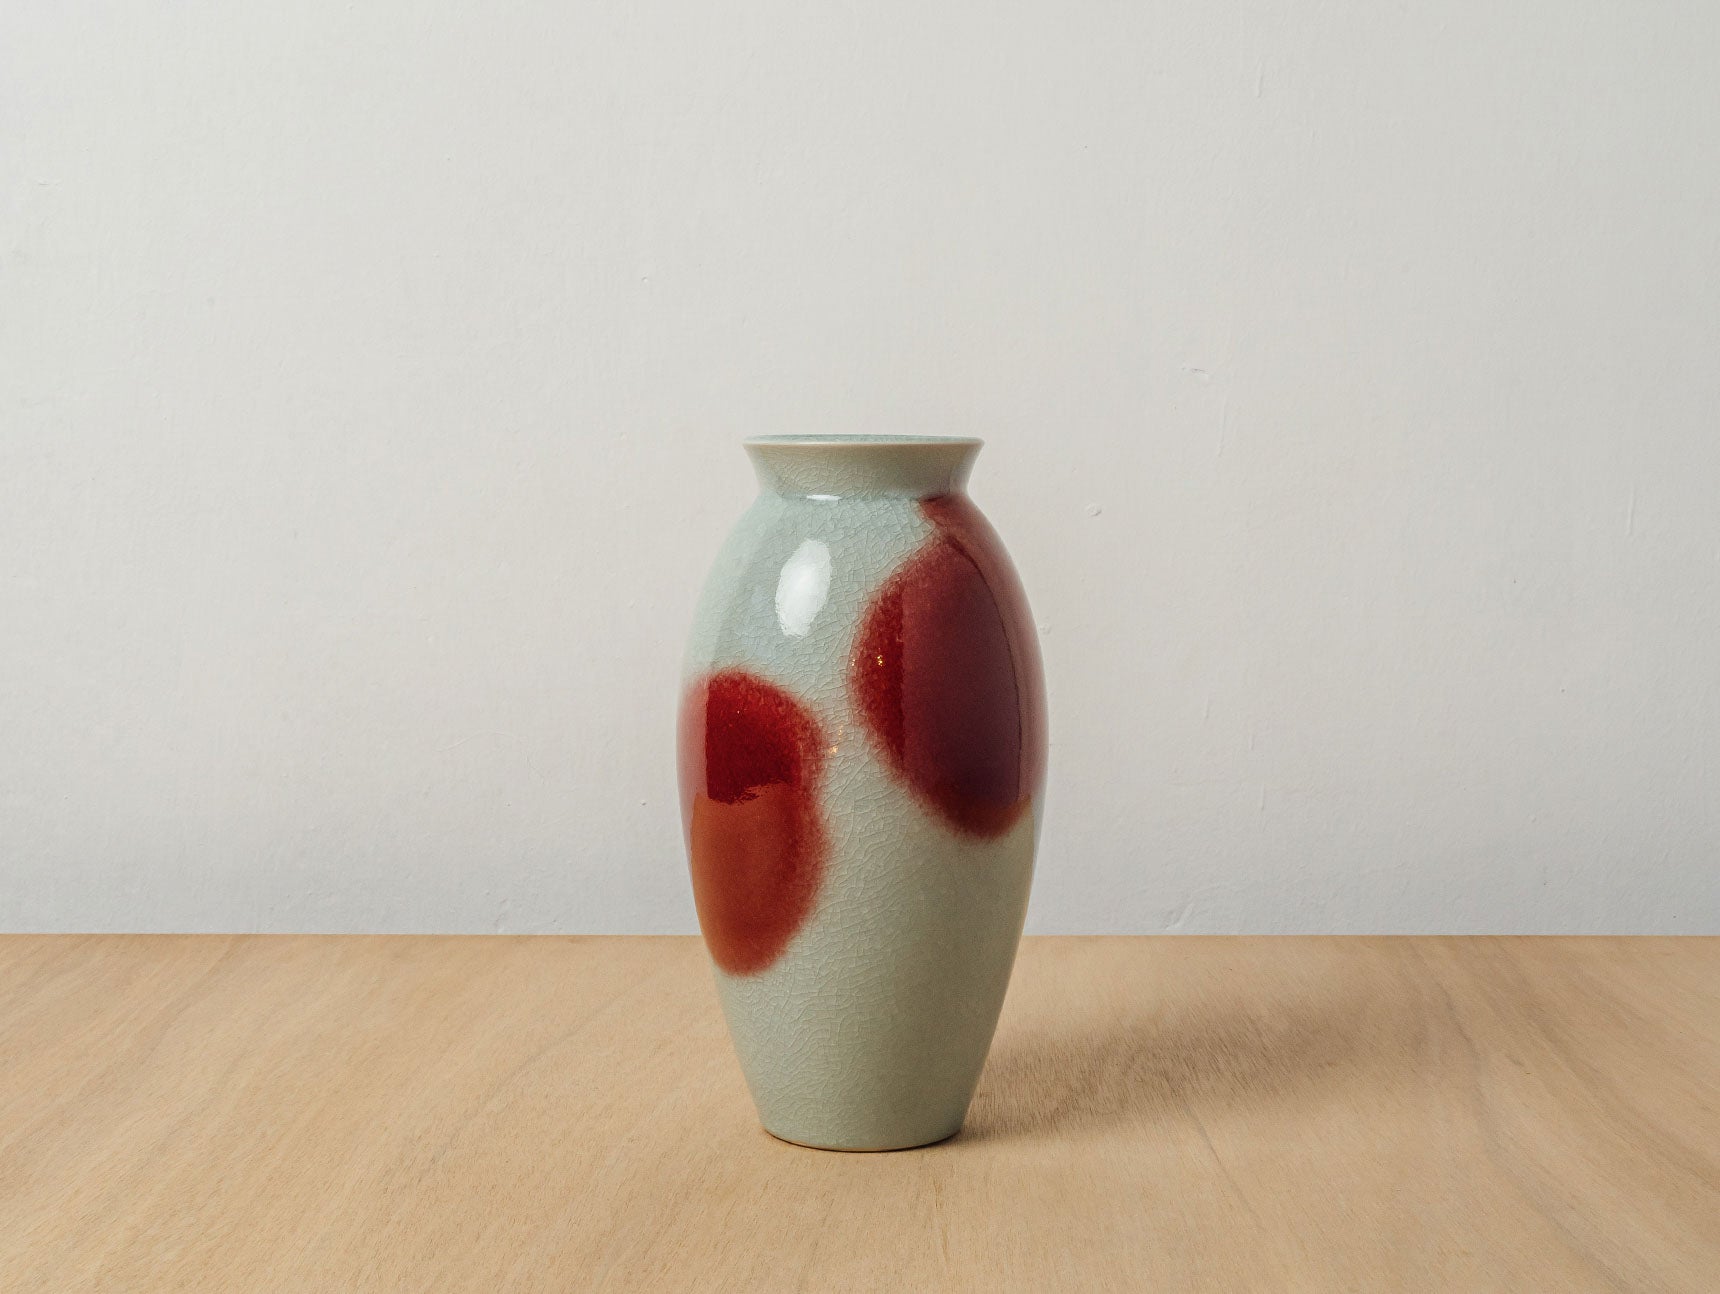 Vintage Ikebana Vases